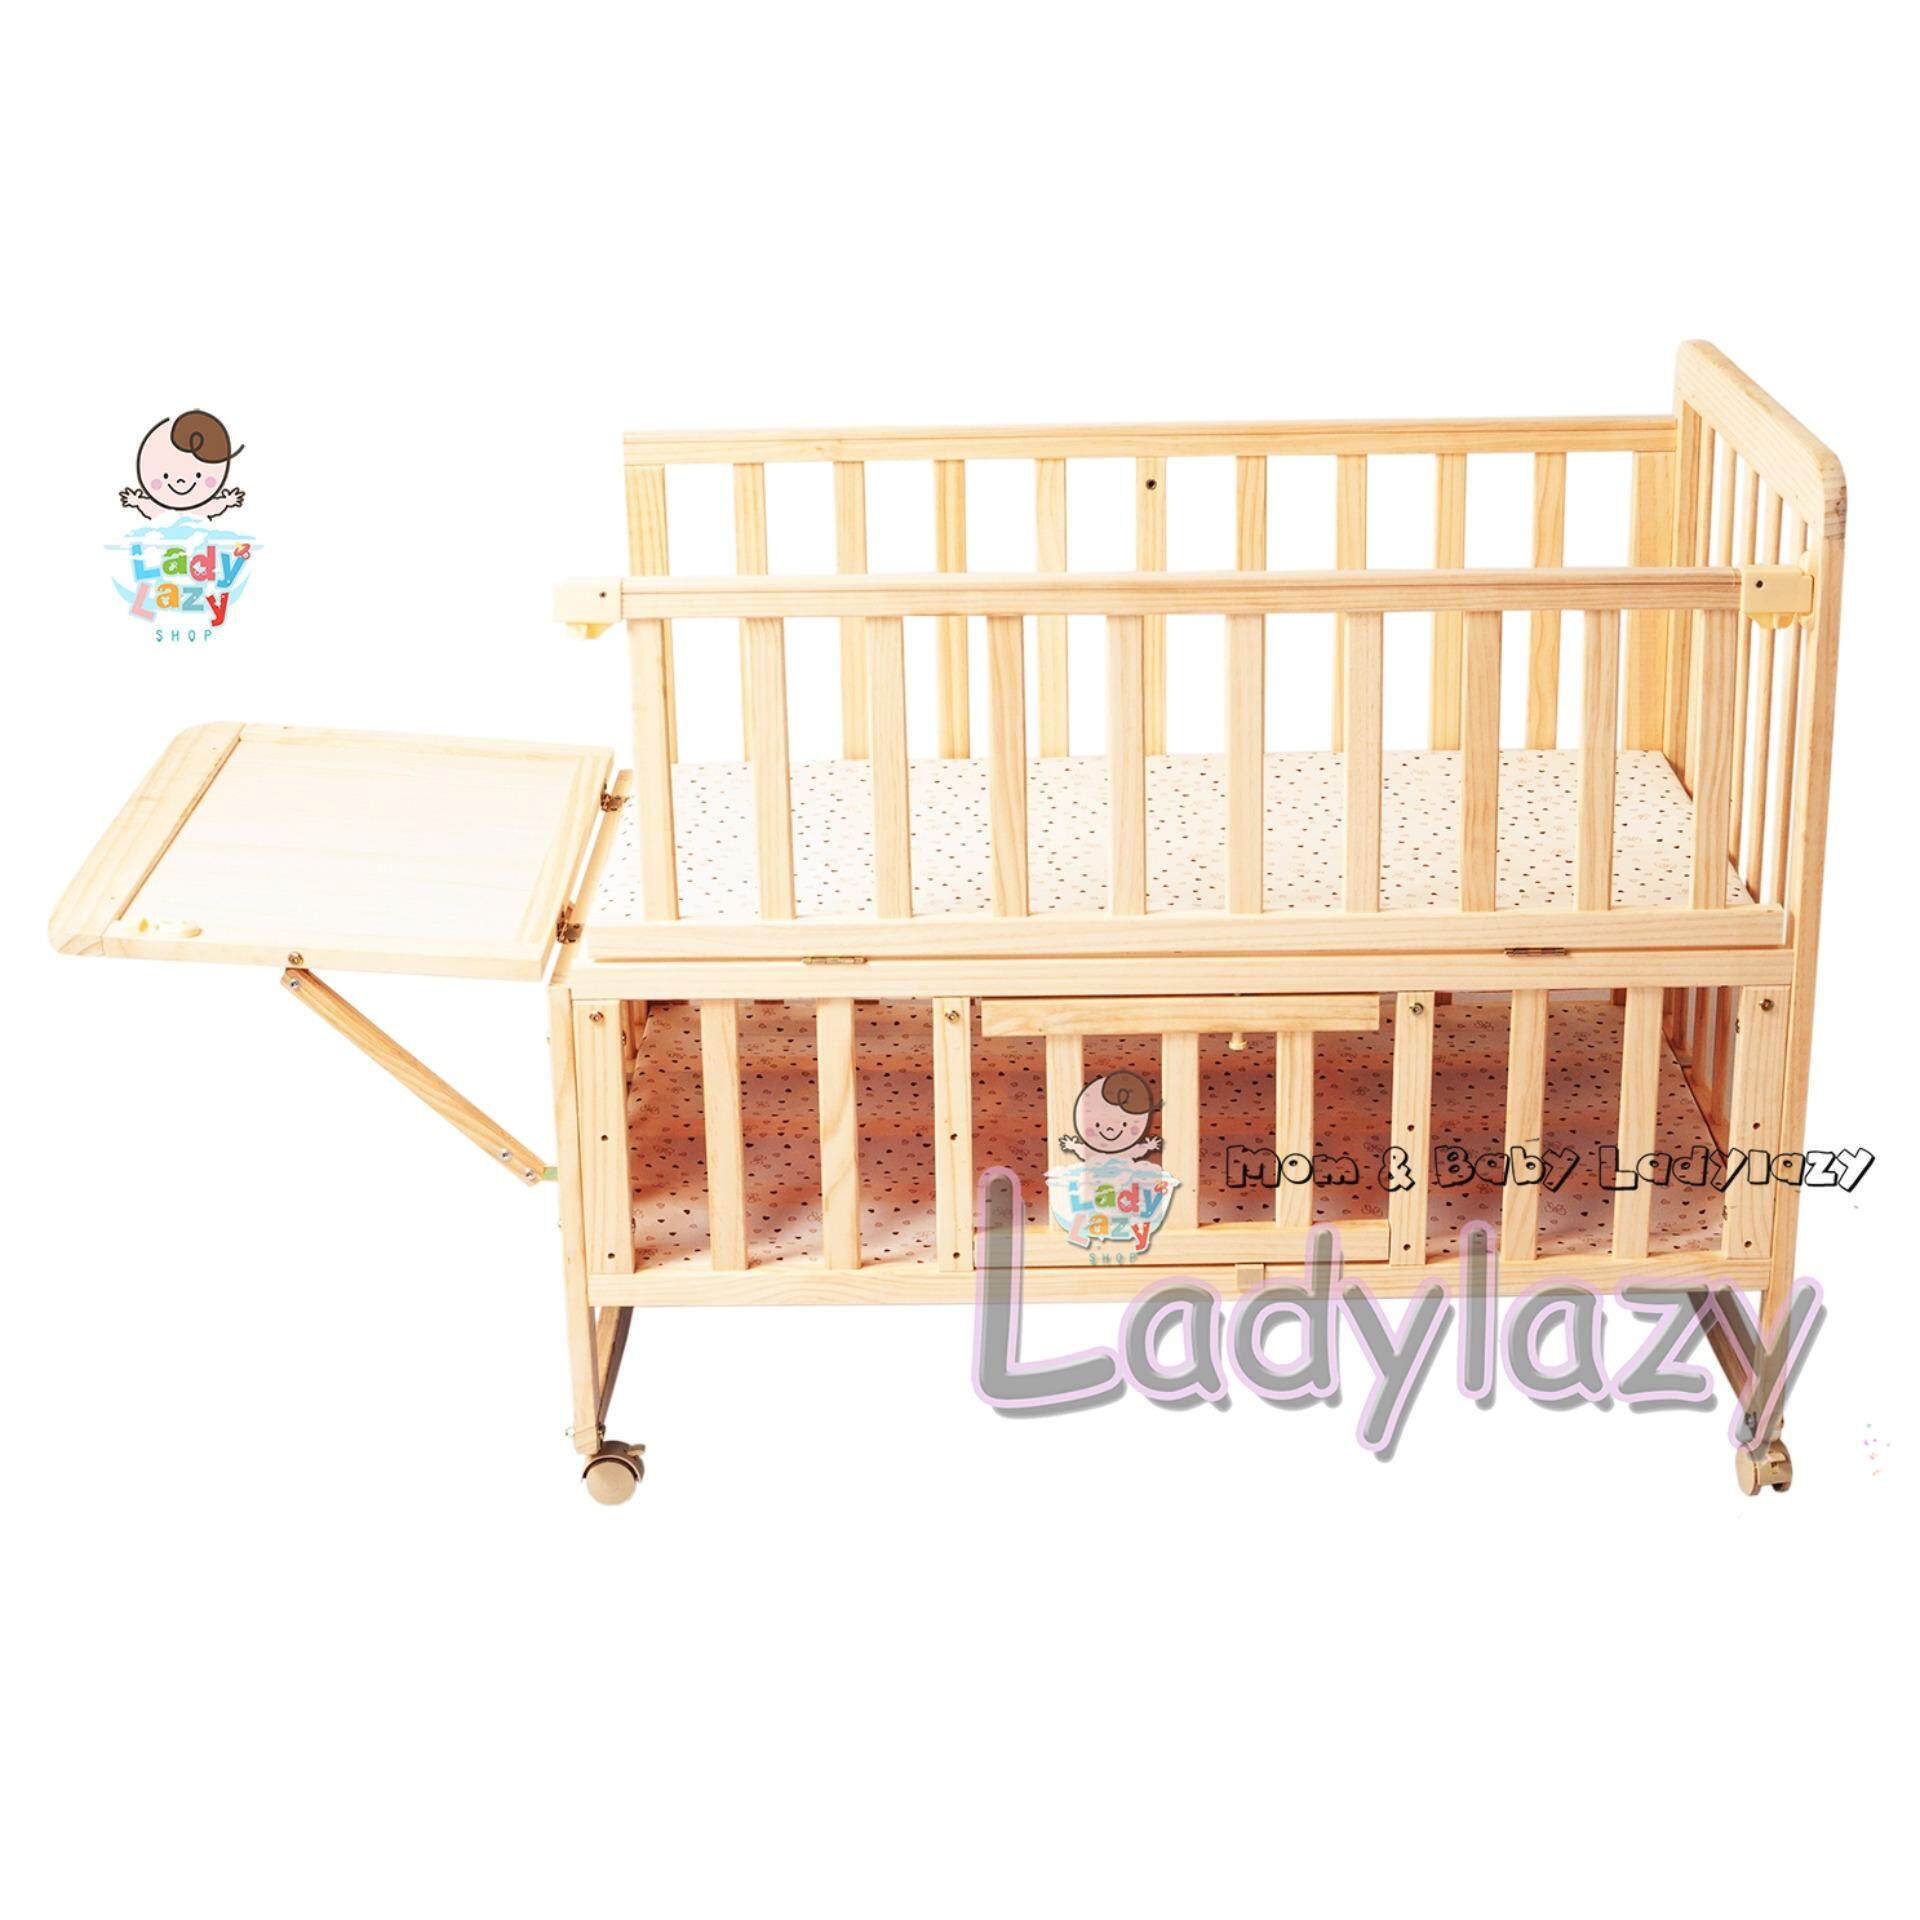 ราคา Ladylazyเตียงเด็ก เตียงนอนไม้เด็ก เข็นได้/โยกได้ พื้นเตียงปรับระดับได้ ทำจากไม้สนแท้ 100%